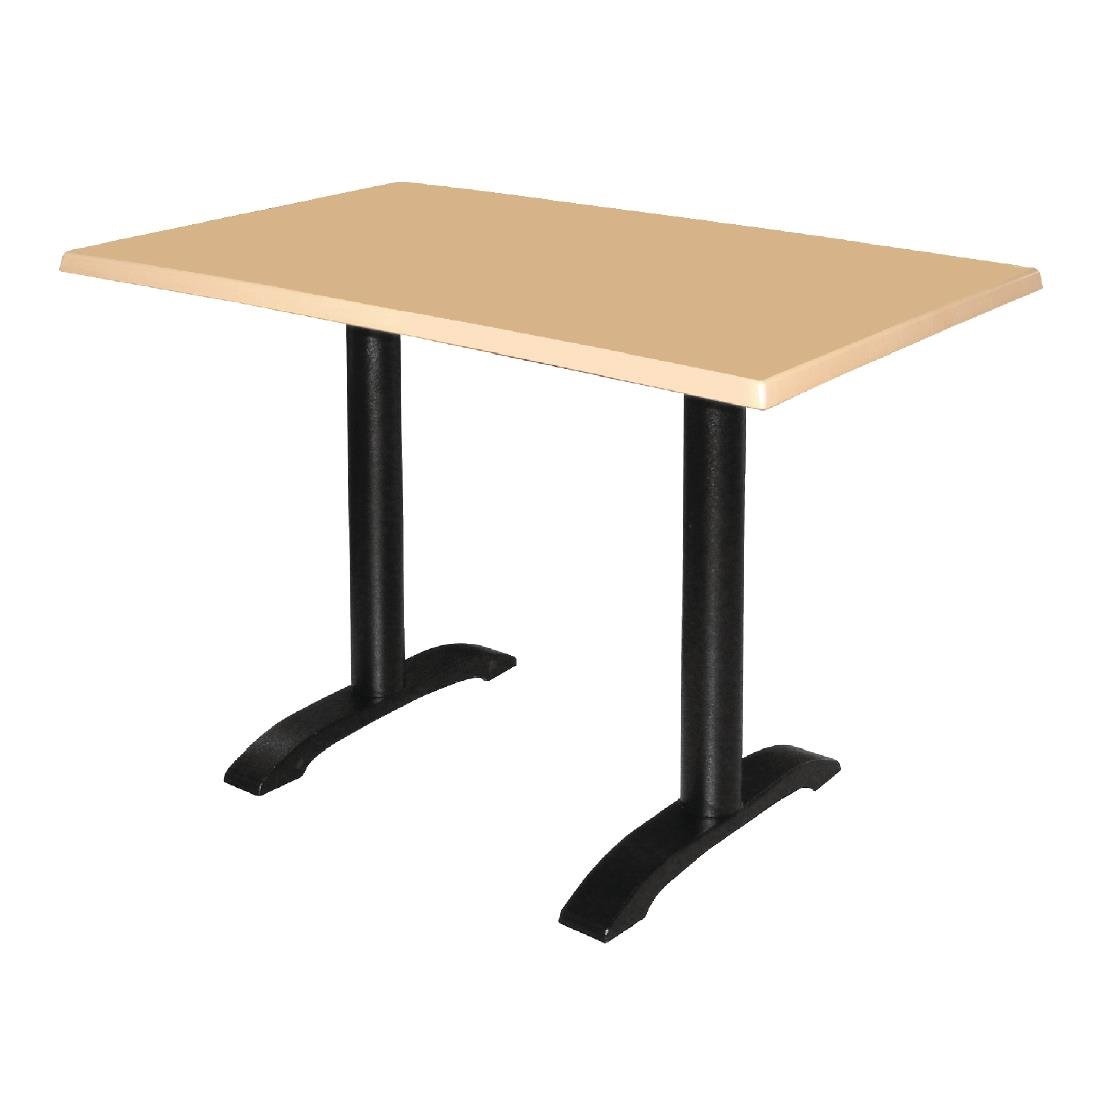 Doppeltischfuß Gußeisen | Universell | Höhe 720mm | Für Tischplatten bis 700x1100mm